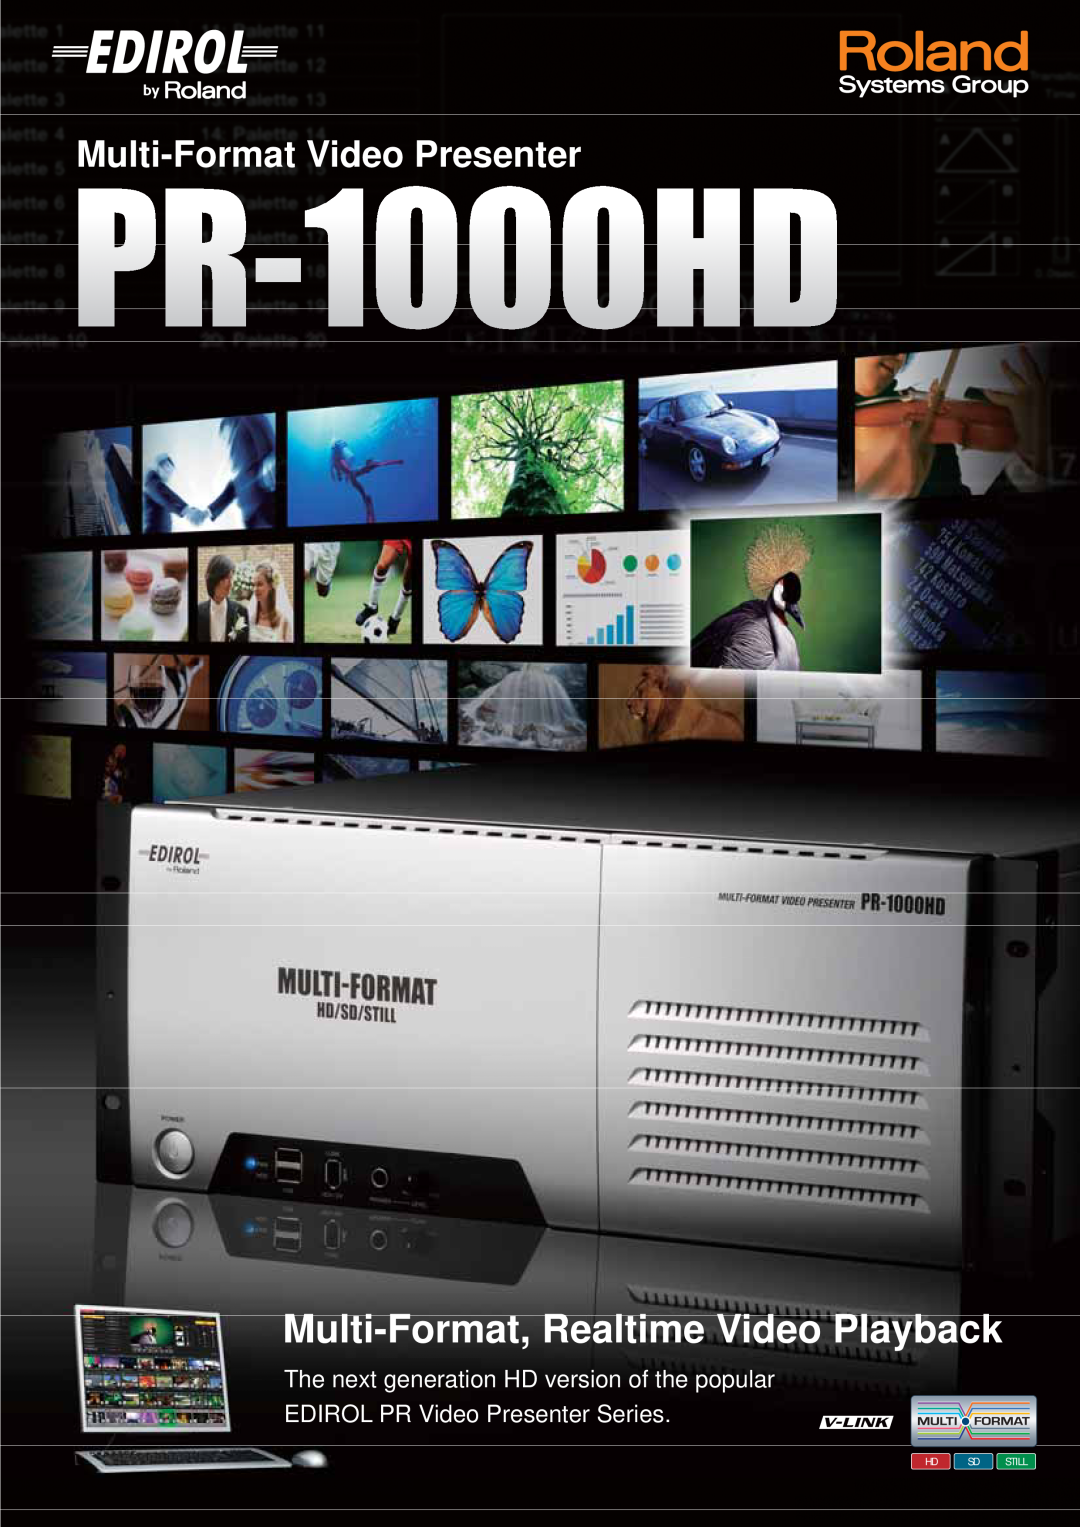 Edirol PR-1000HD manual Multi-Format, Realtime Video Playback, Multi-Format Video Presenter, Hd Sd Still 